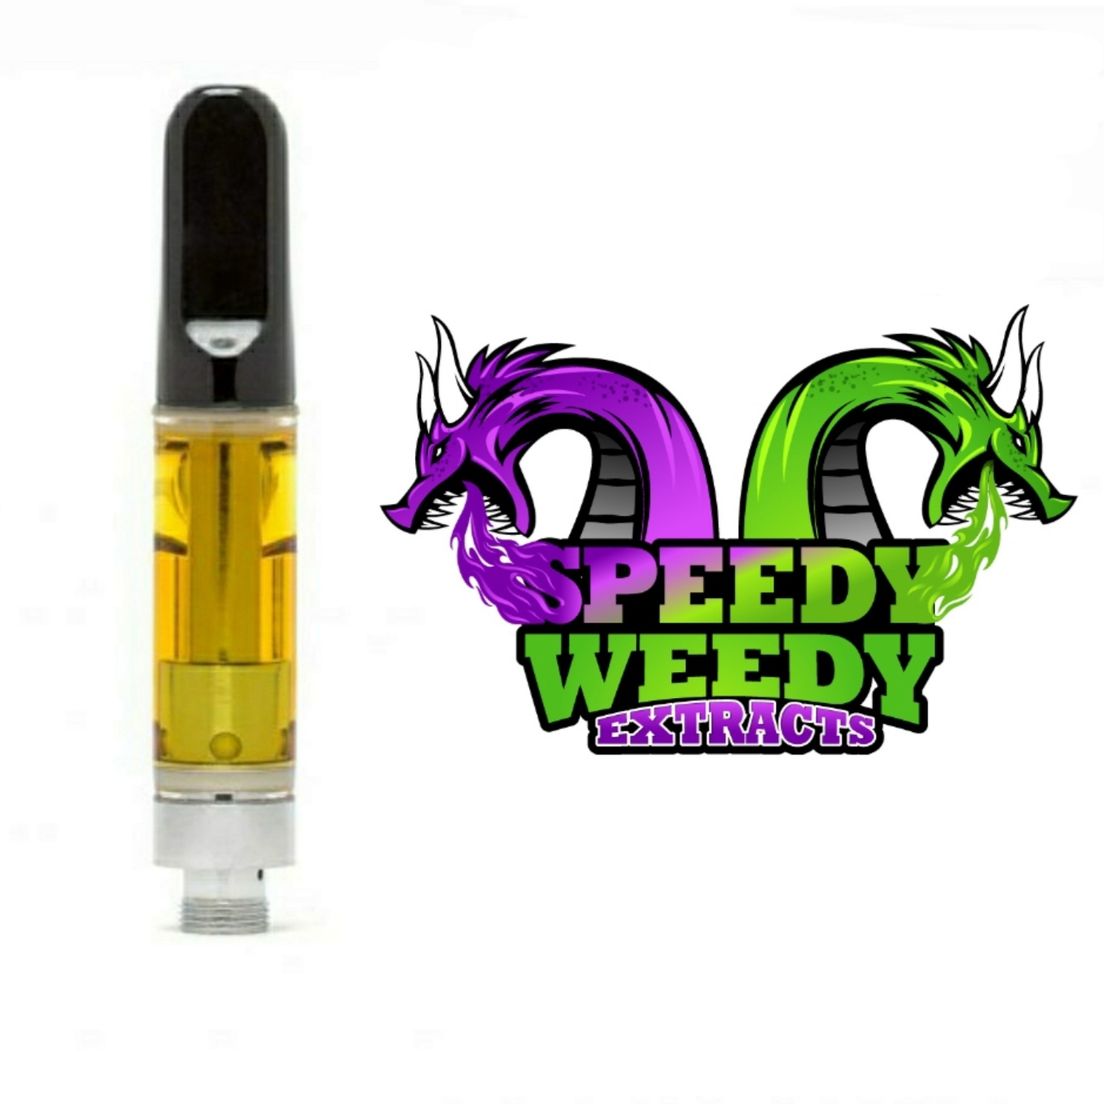 1. Speedy Weedy 1g Cartridge - Cherry Pie - 3/$60 Mix/Match